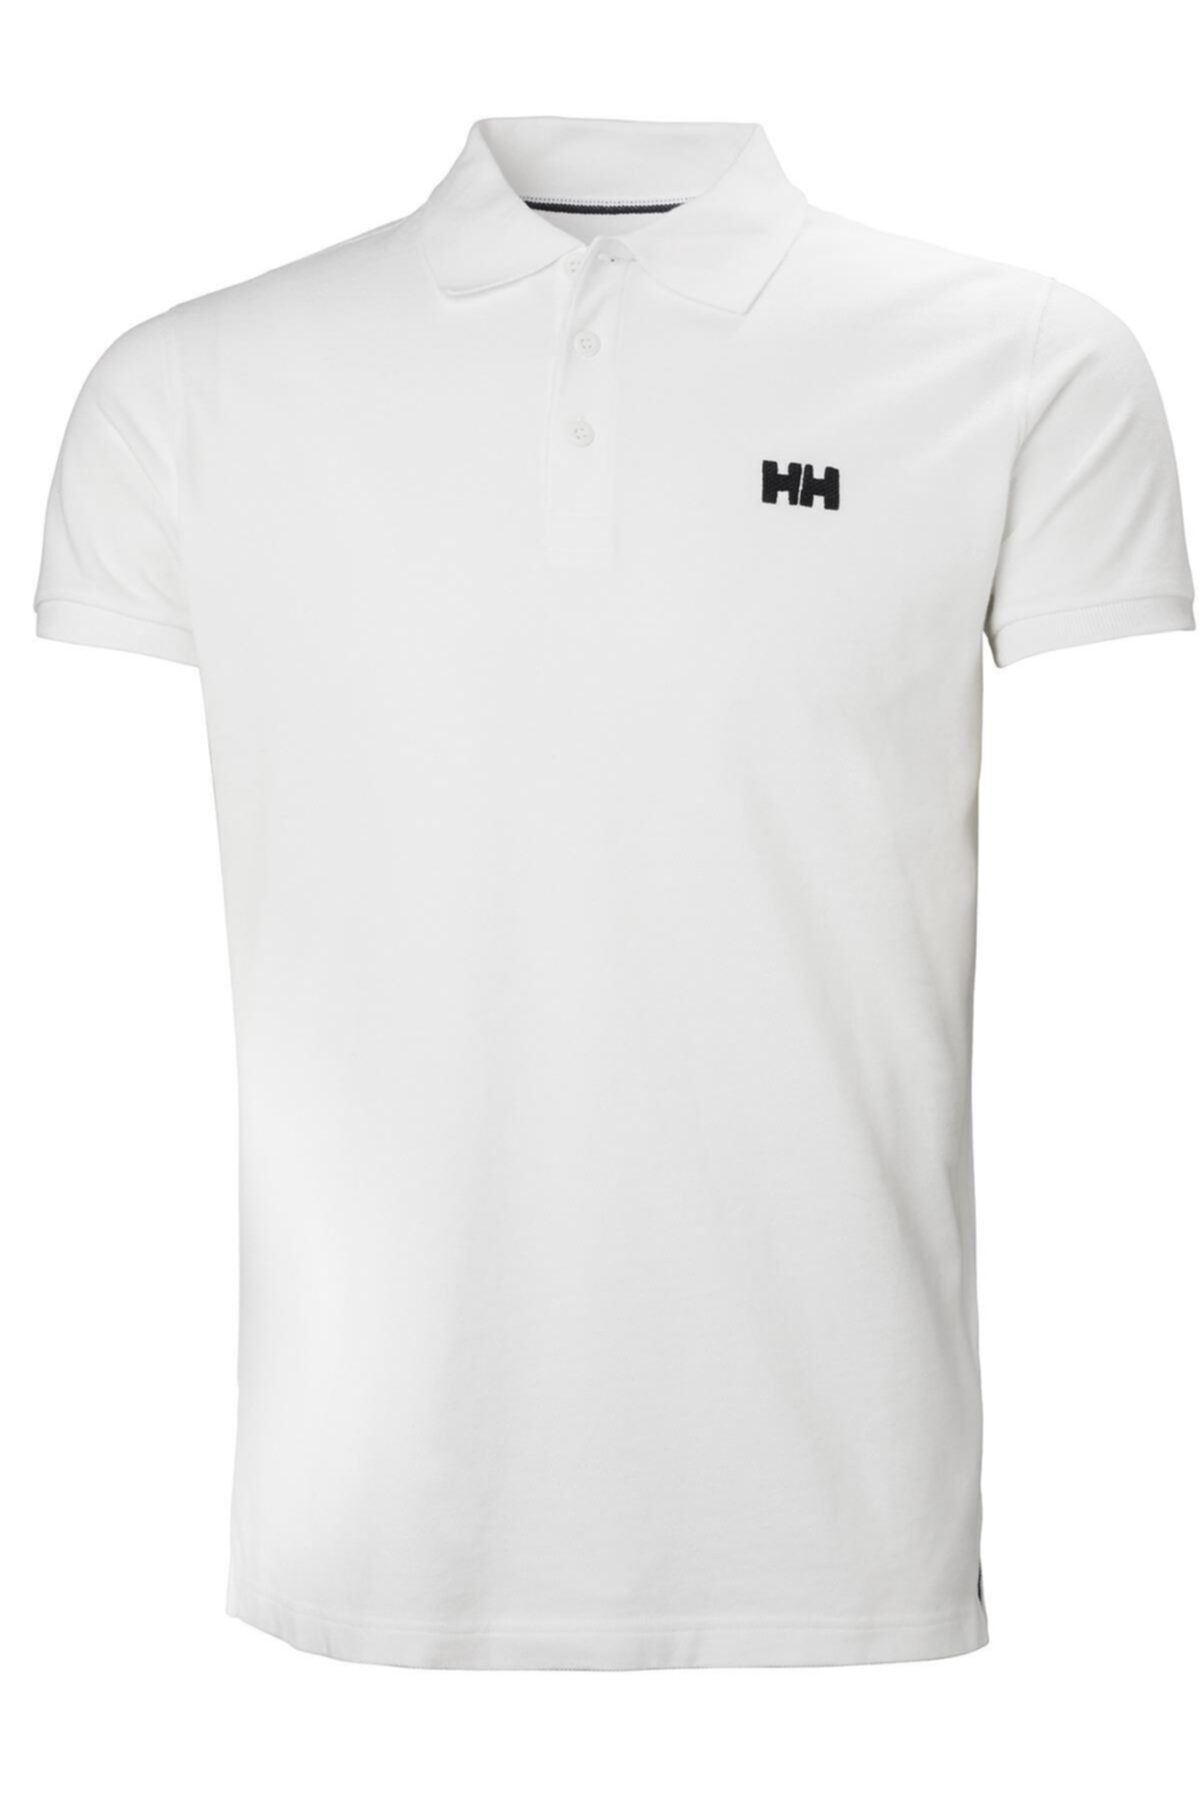 Helly Hansen Hh Transat Polo Erkek T-shirt / Polo T-shirt